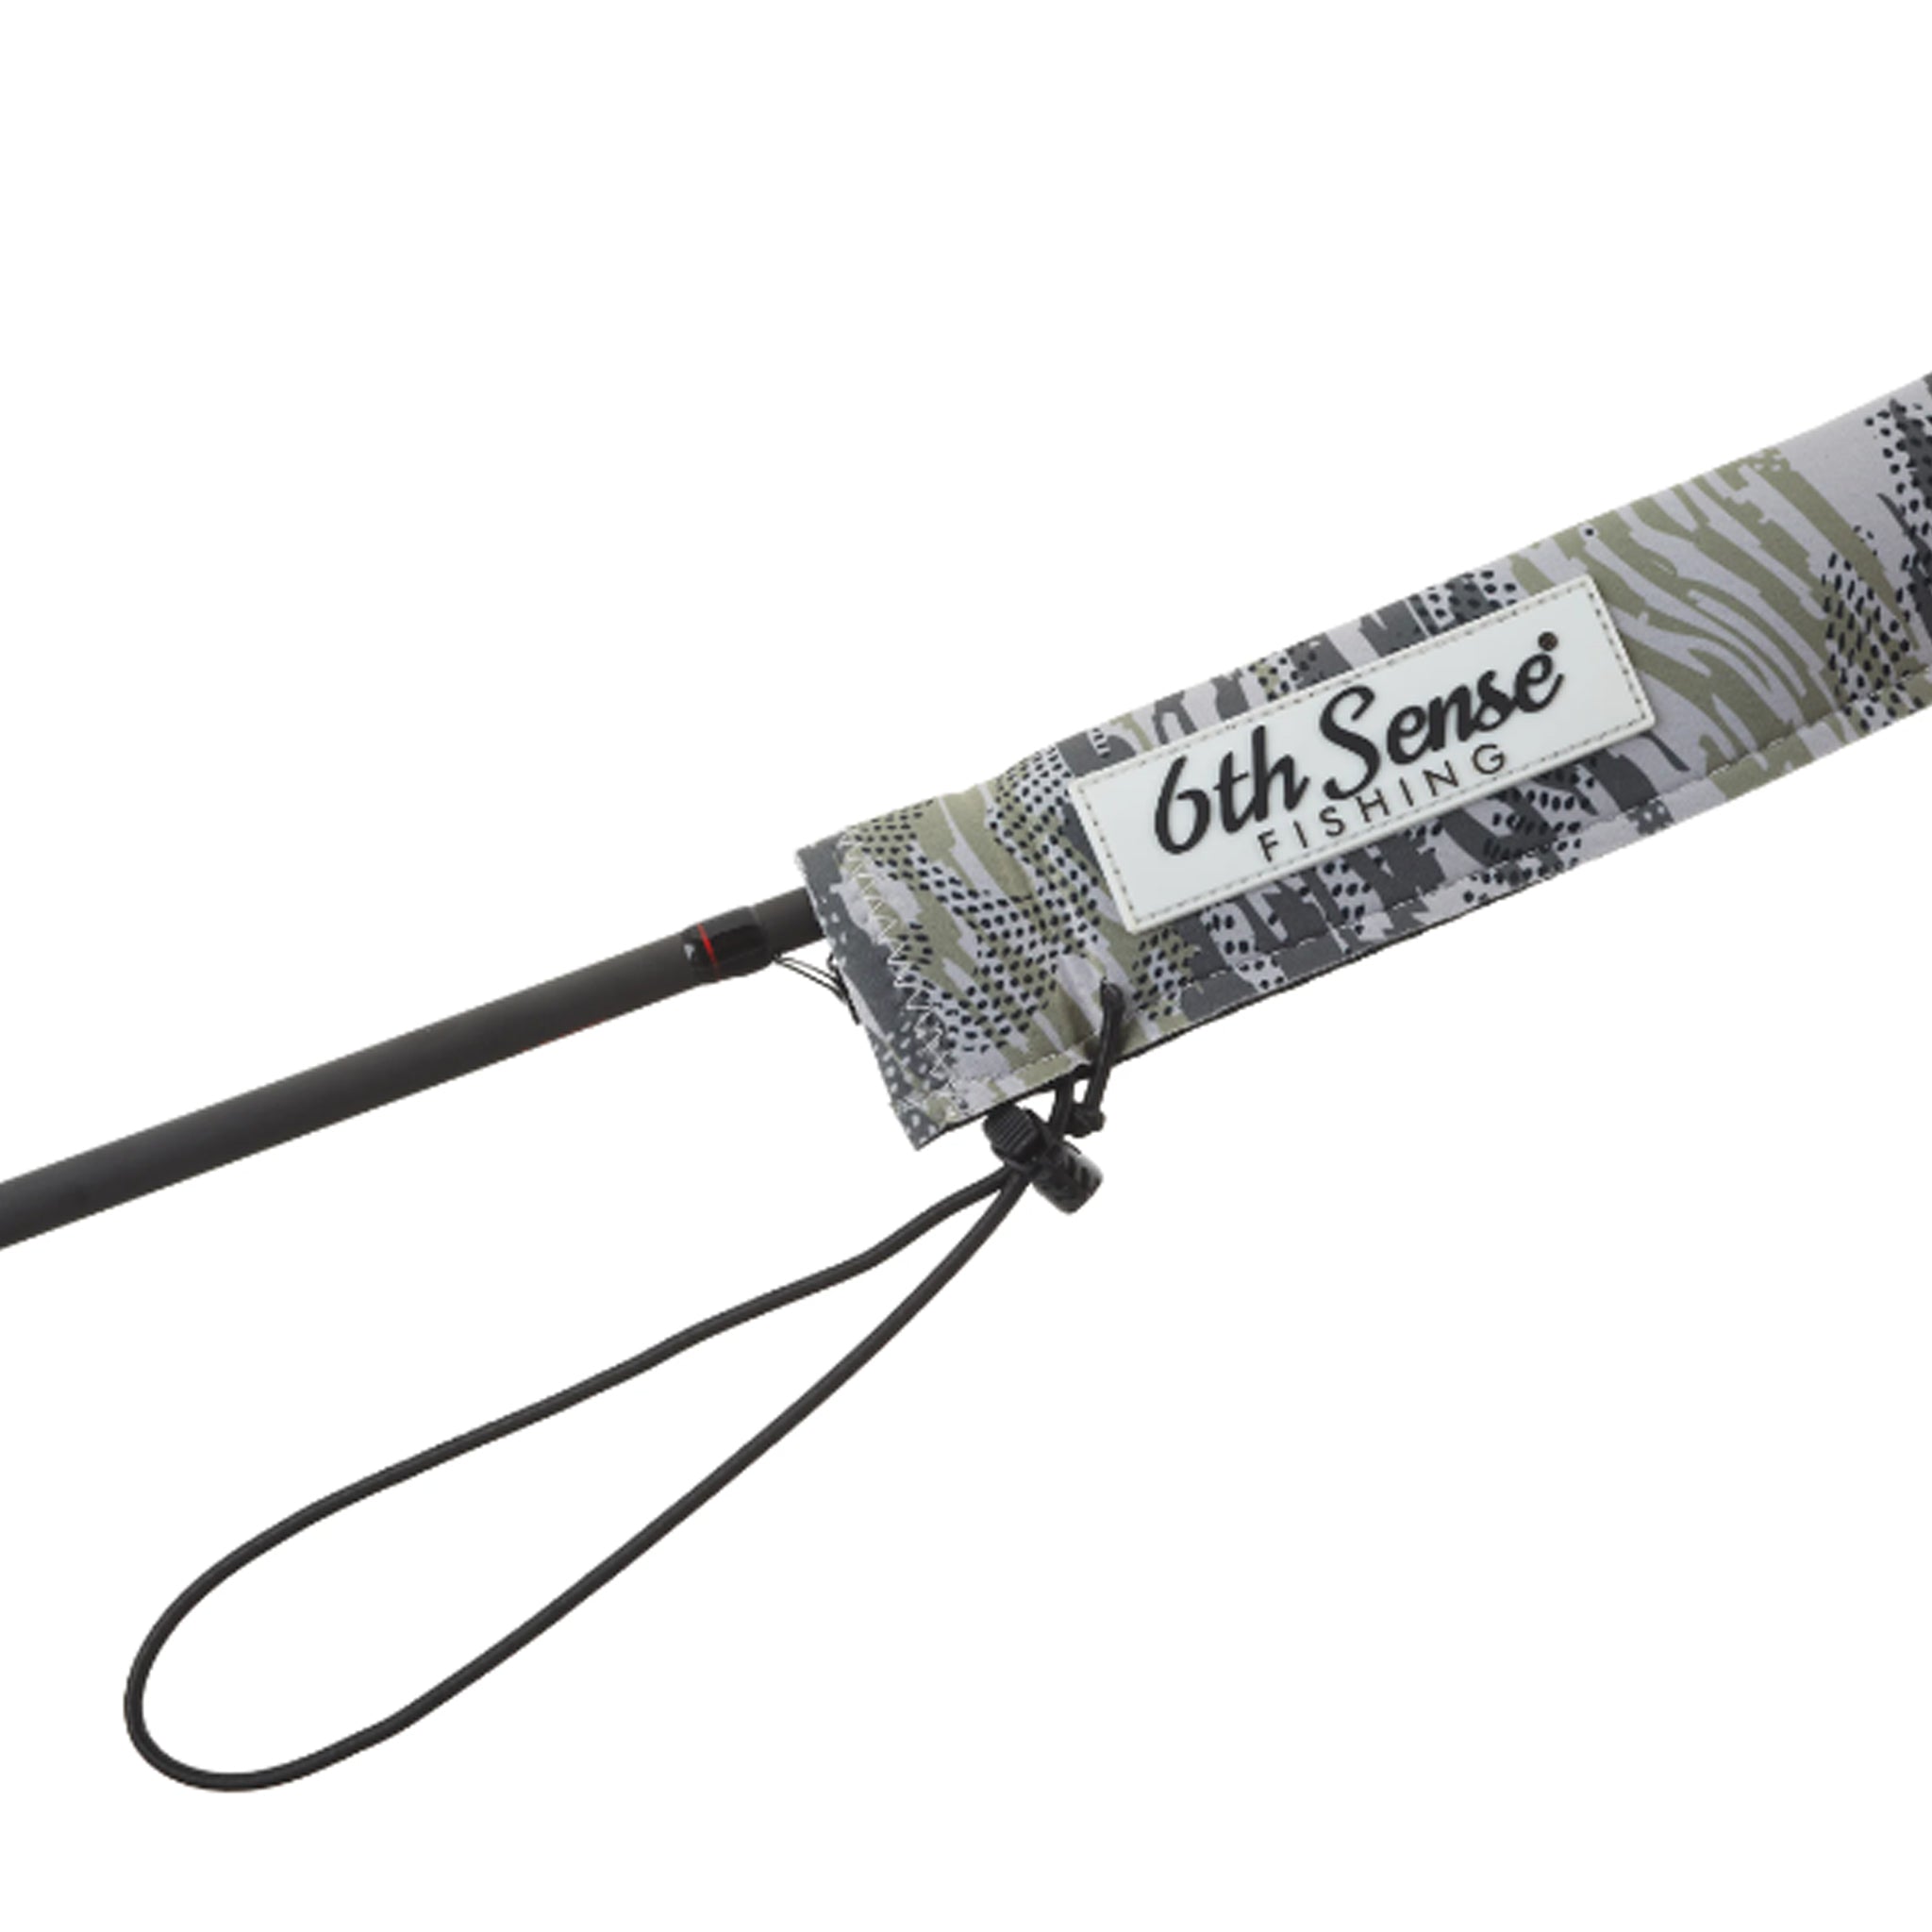 6th Sense Fishing - 6th Sense Rod Sleeves. Protect and store. Made